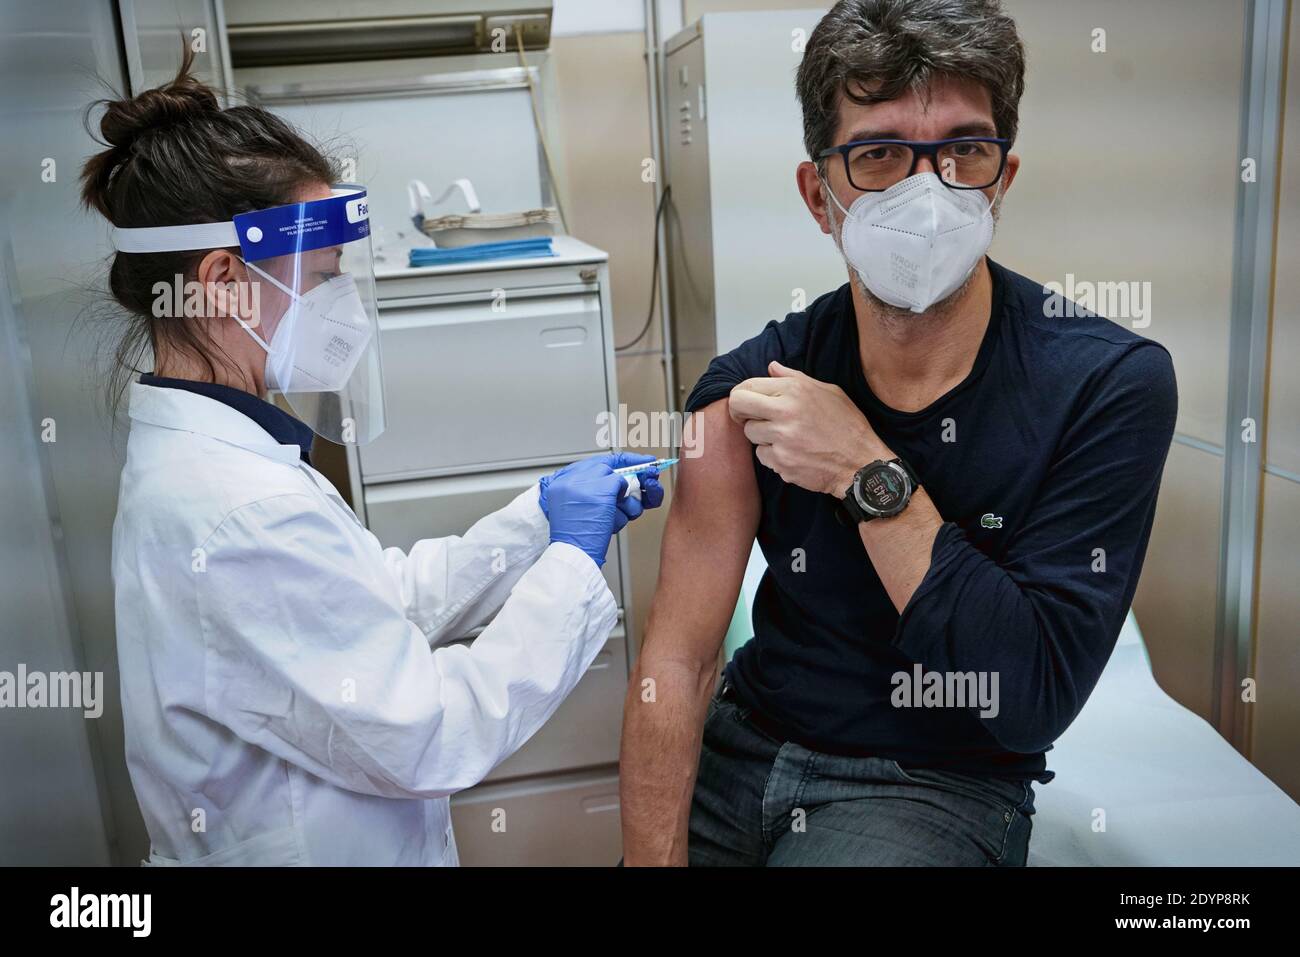 Inizio della vaccinazione contro Covid-19, una persona riceve il vaccino del coronavirus del Pfizer, presso l'Ospedale Amedeo di Savoia. Torino, Italia - 2 dicembre Foto Stock